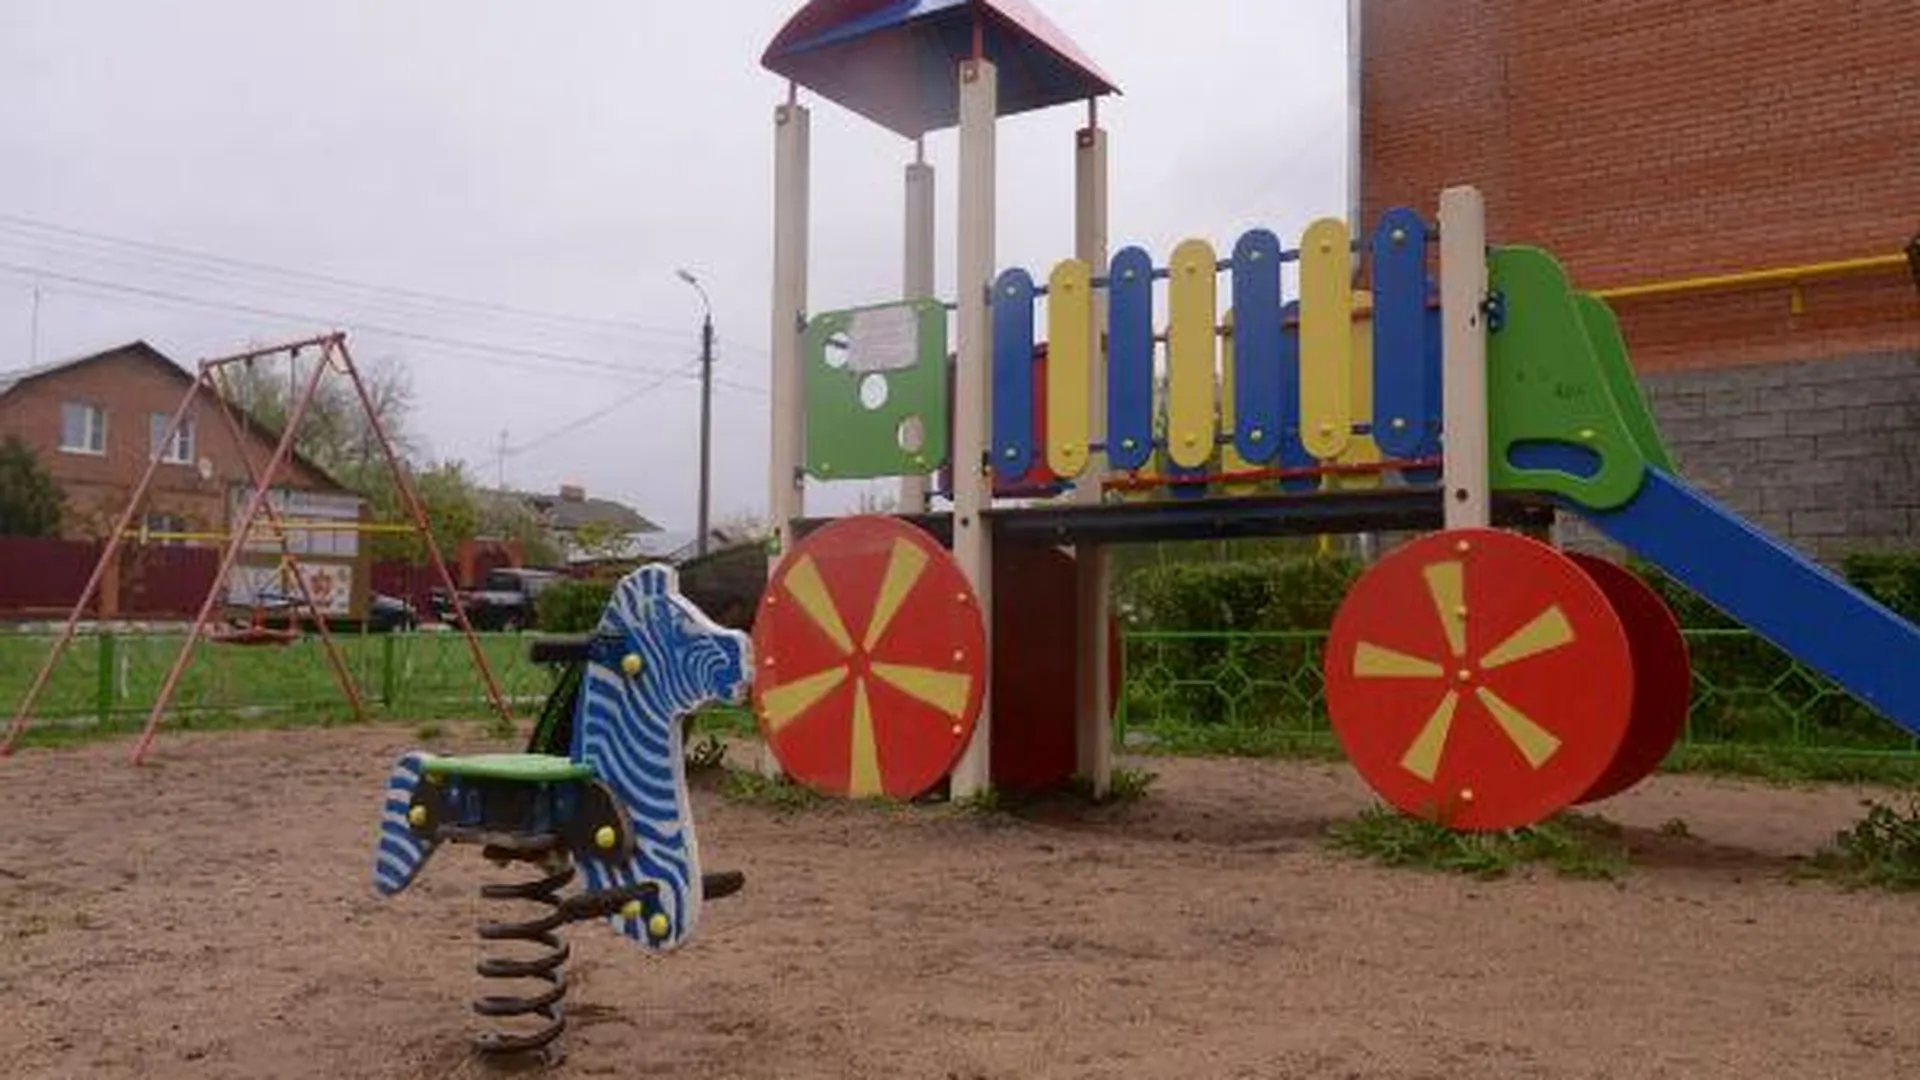 Вице-губернатор Подмосковья проверил дворы и детские площадки в Пушкино